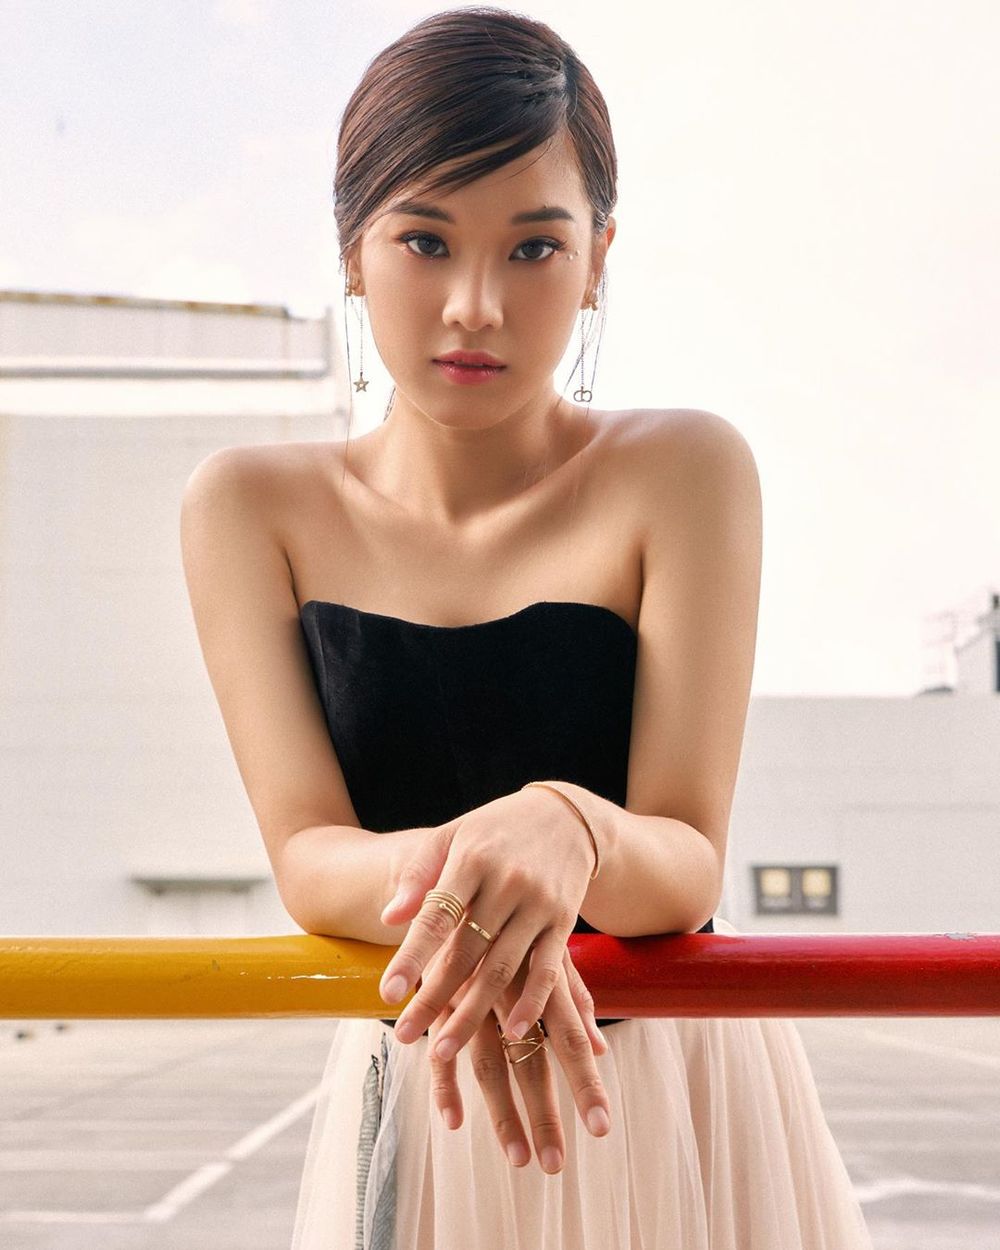  
Hoàng Yến Chibi trình làng bộ ảnh mới, ca sĩ diện áo cúp ngực với phần chân váy xòe. (Ảnh: Instagram nhân vật)